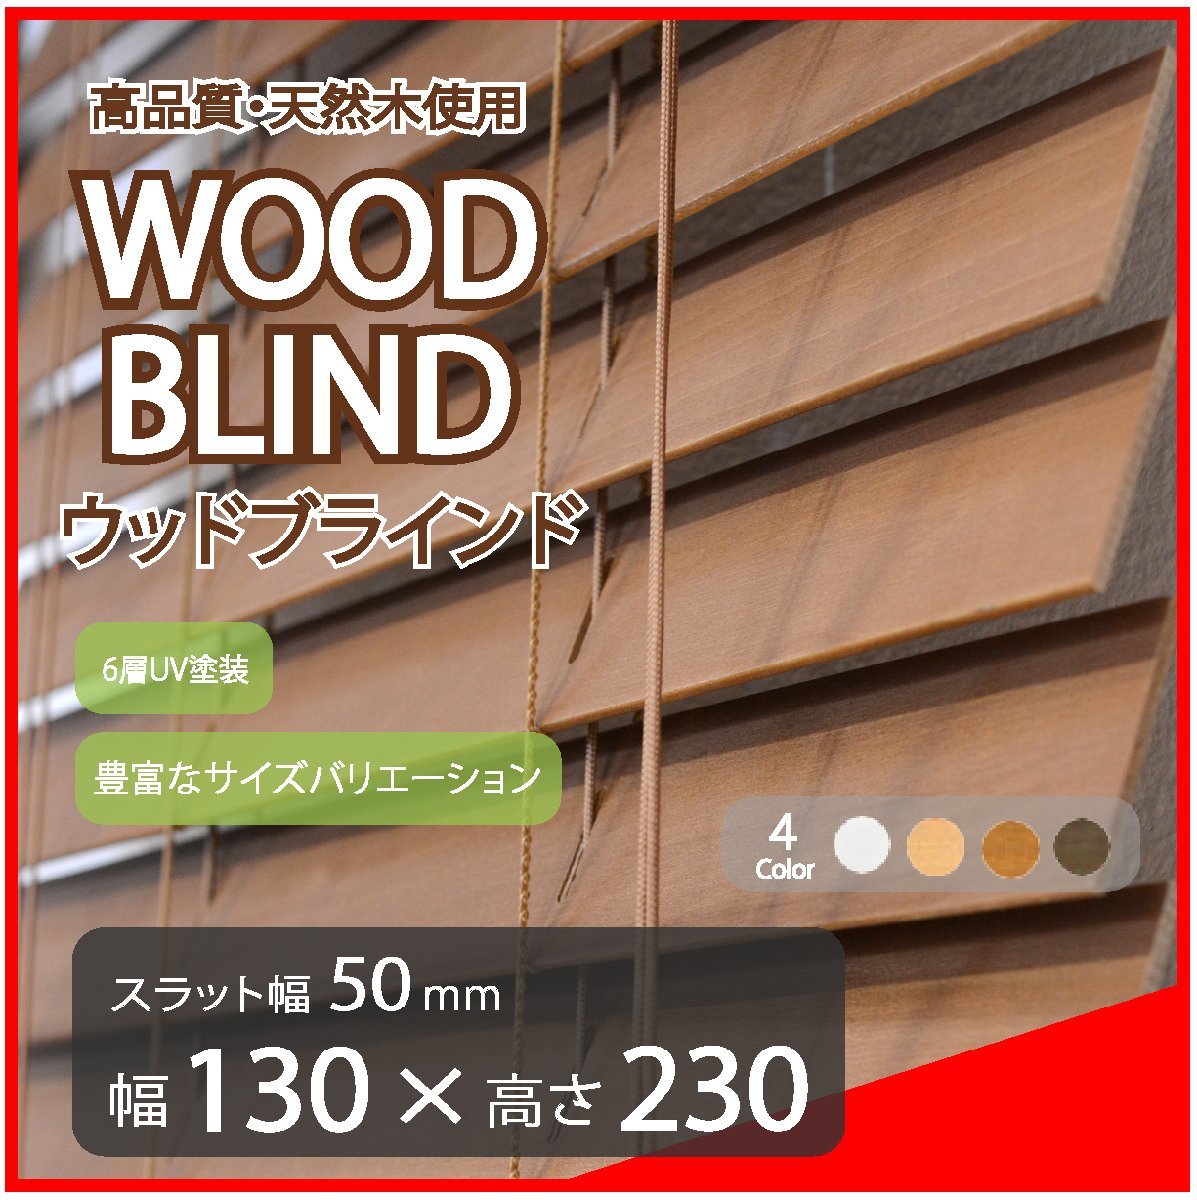 高品質 ウッドブラインド 木製 ブラインド 既成サイズ スラット(羽根)幅50mm 幅130cm×高さ230cm ブラウン